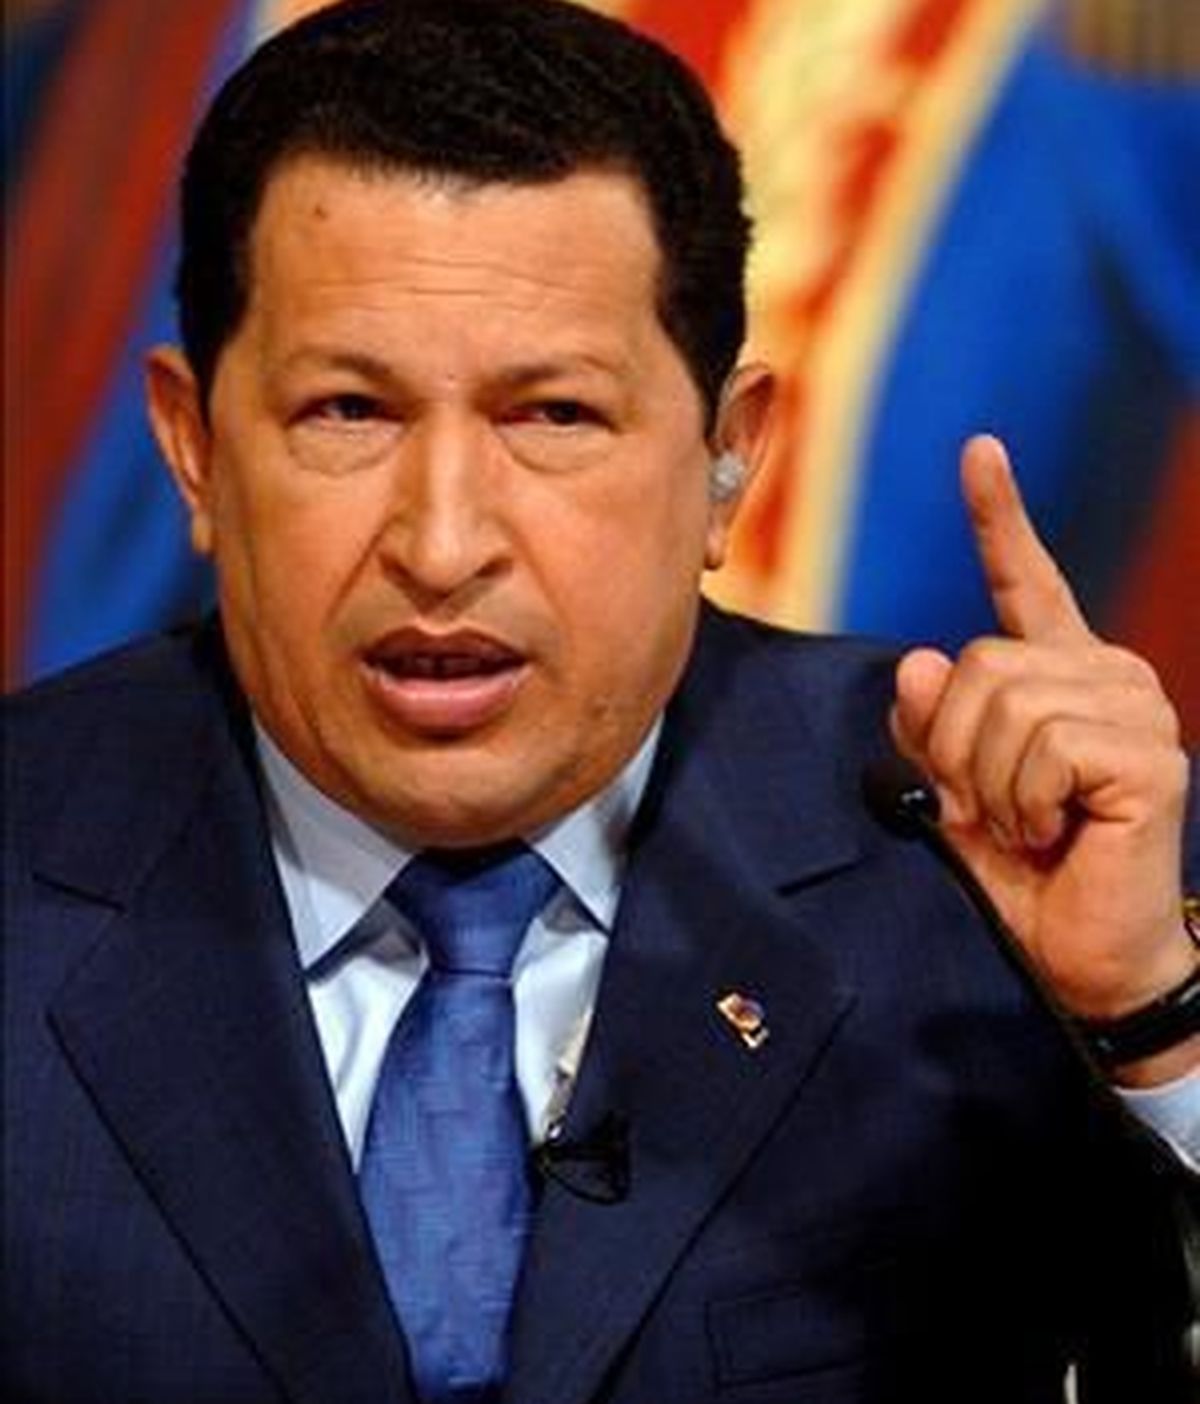 La polémica sobre la supuesta colaboración del Gobierno de Chávez con ETA se ha reavivado por las acusaciones del ministro de Exteriores de Venezuela que vincula al juez Velazco con la "mafia de Aznar". Video: Informativos Telecinco.